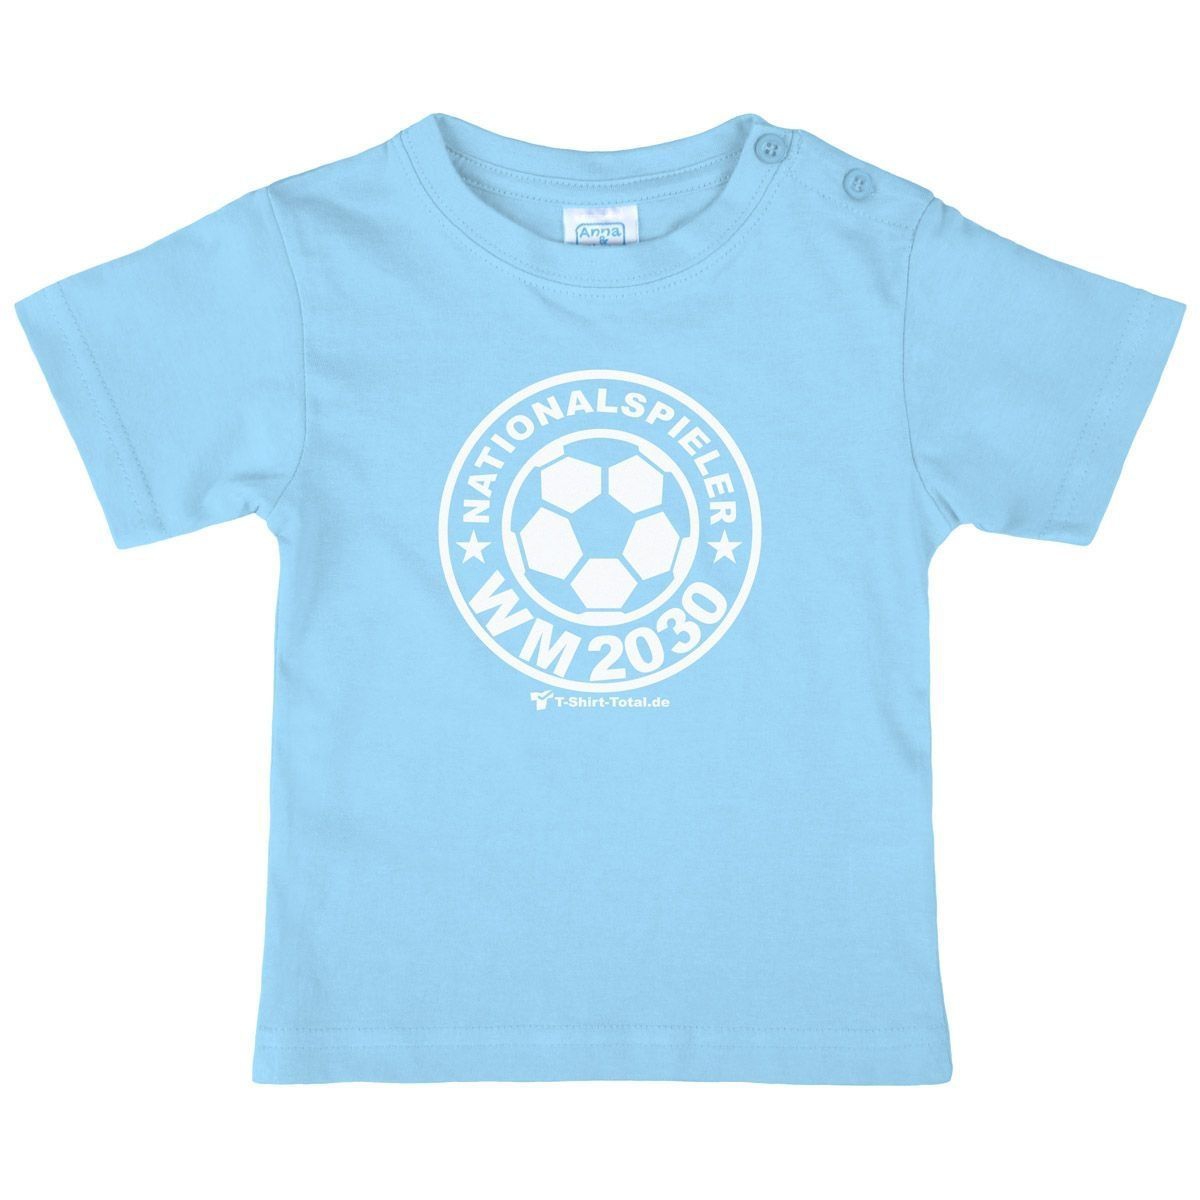 Nationalspieler 2042 Kinder T-Shirt hellblau 104